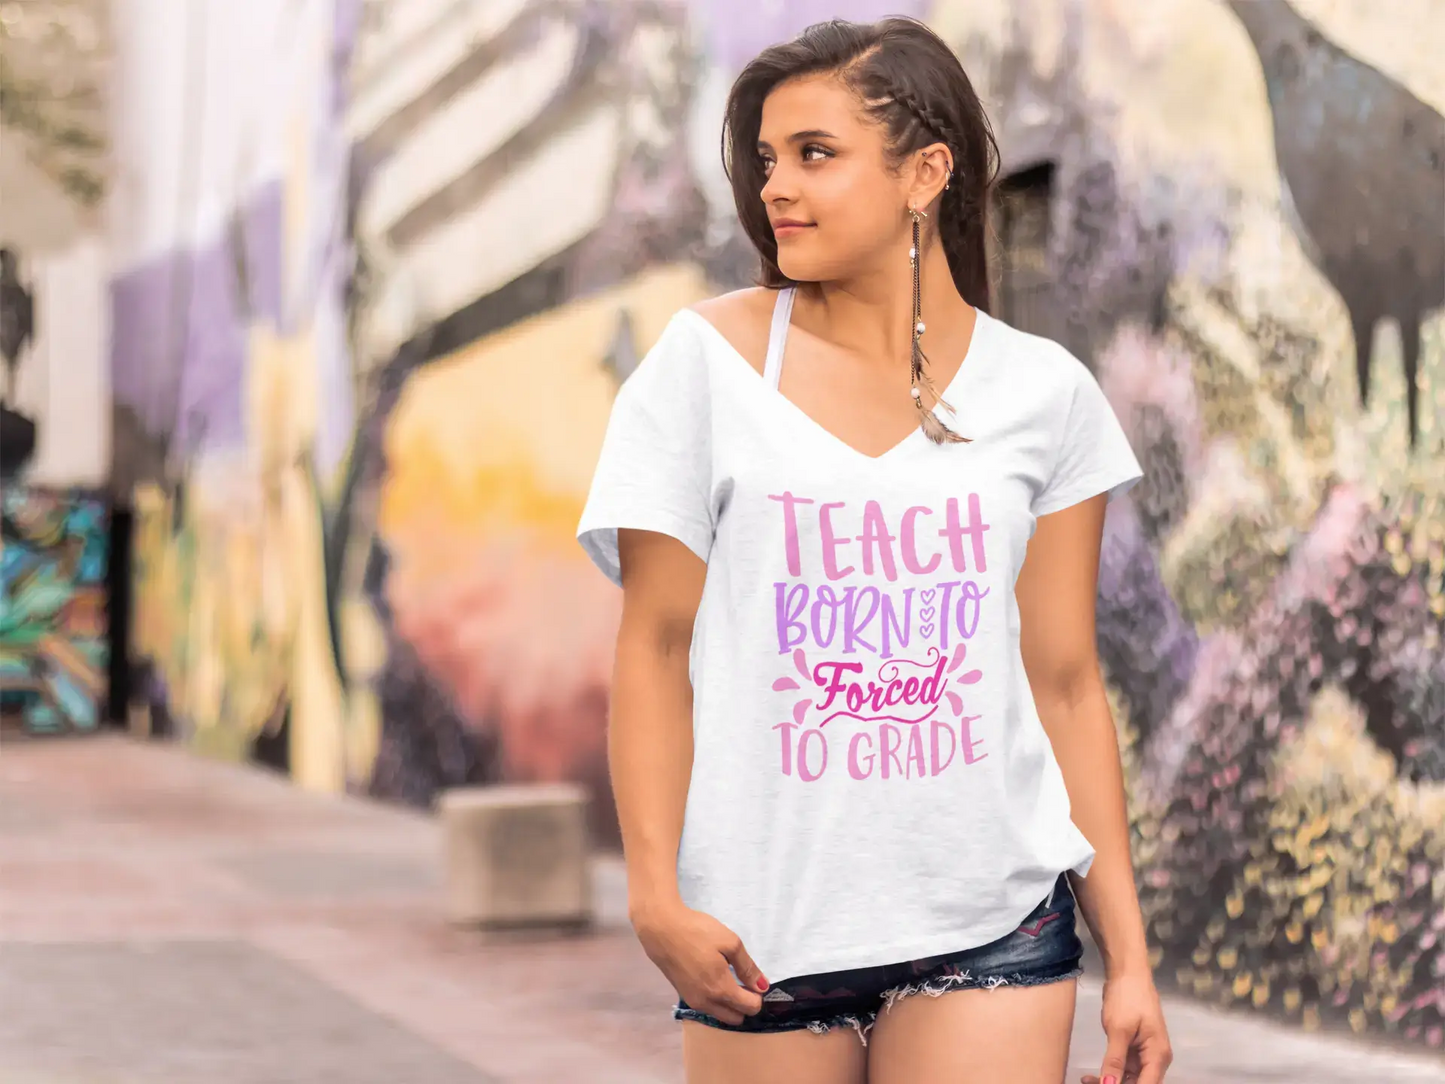 ULTRABASIC Women's T-Shirt Born to Teach Forced to Grade - Short Sleeve Tee Shirt Tops